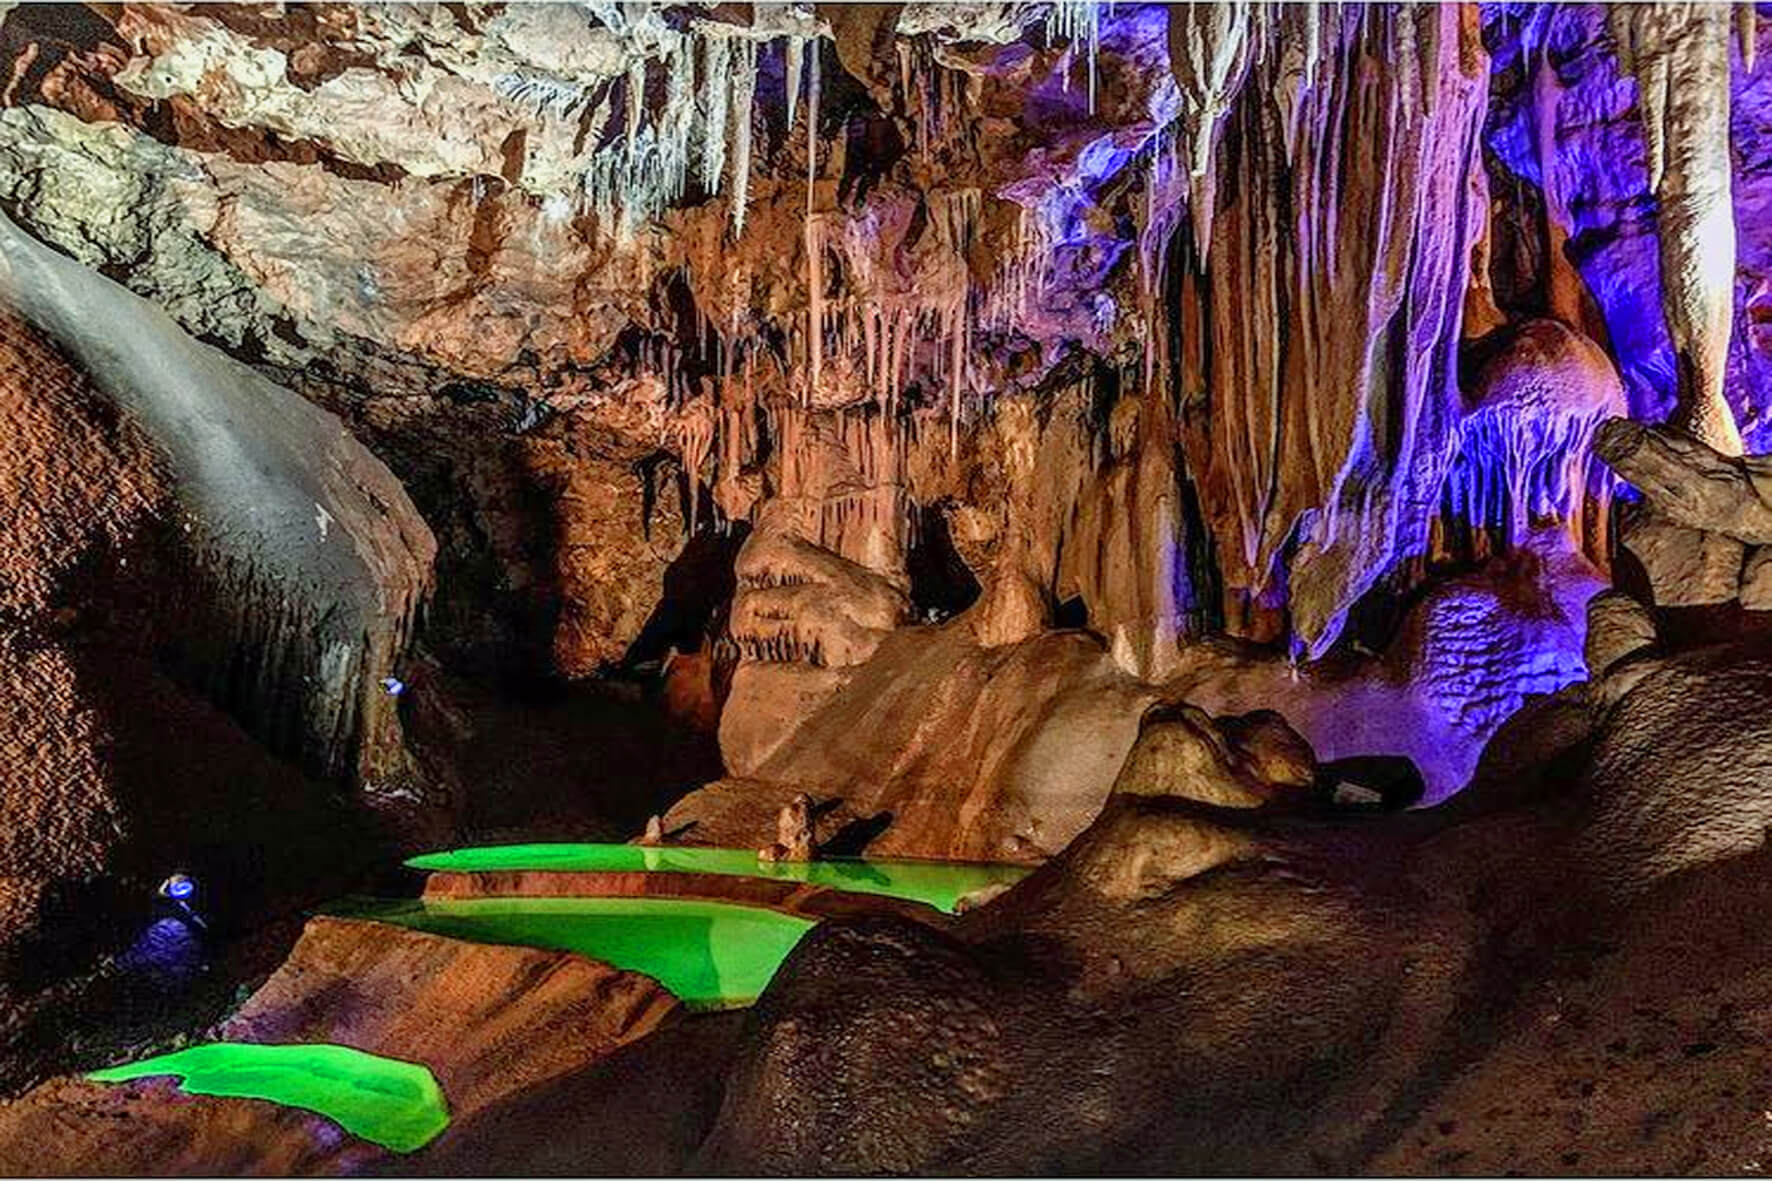 La Grotte de Baume donnant lieu à un spectacle très spécial avec des couleurs incroyables ©Grottes de France